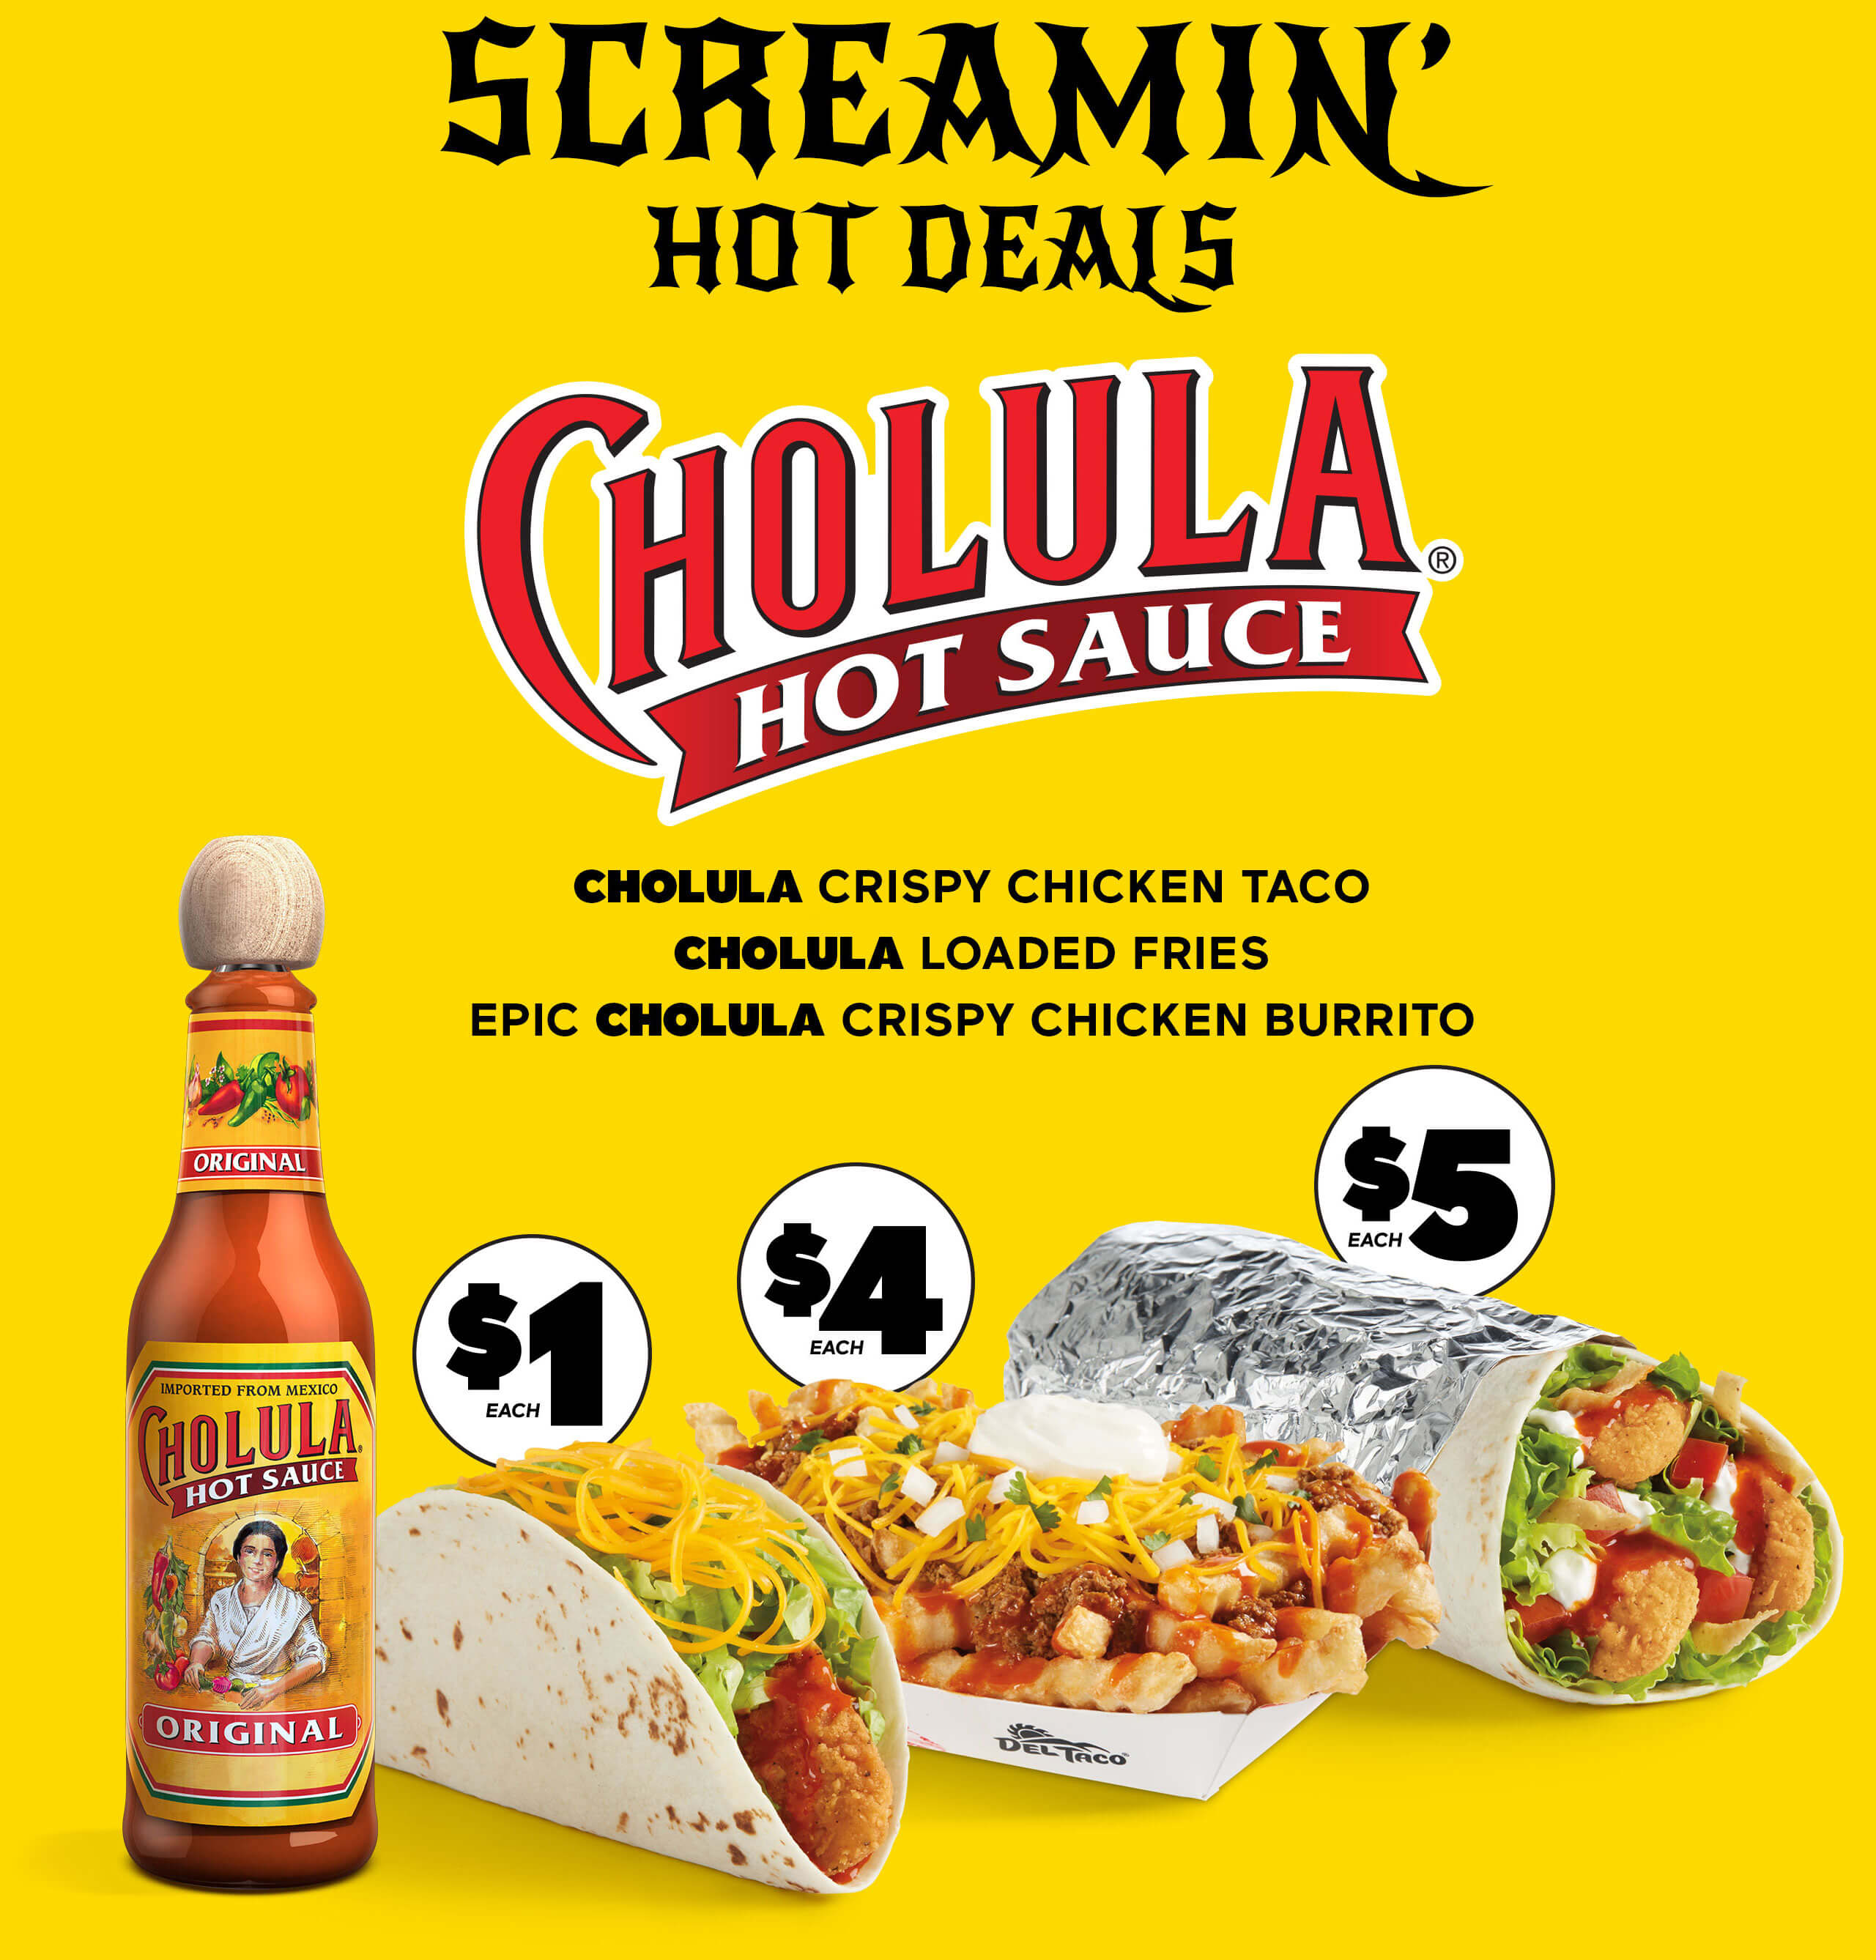 Screamin' Hot Deals with Cholula Hot Sauce. Cholula Crispy Chicken Taco, Cholula Loaded Fries, and Epic Cholula Crispy Chicken Burrito.